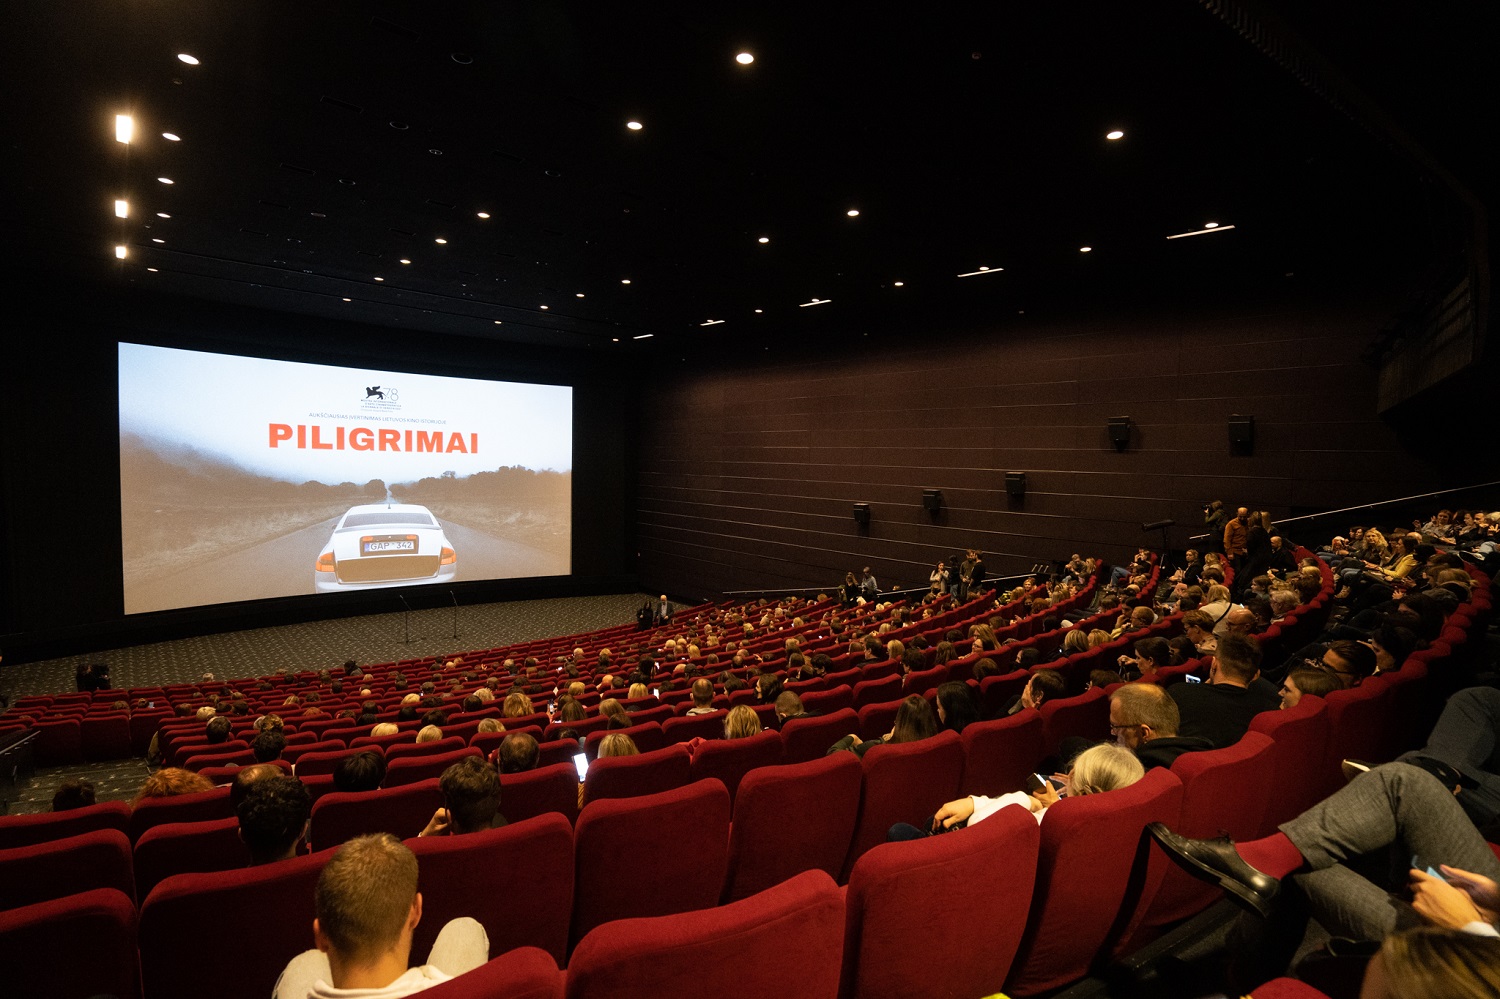 Pasaulinį pripažinimą pelniusį filmą „Piligrimai“ įsigijo HBO